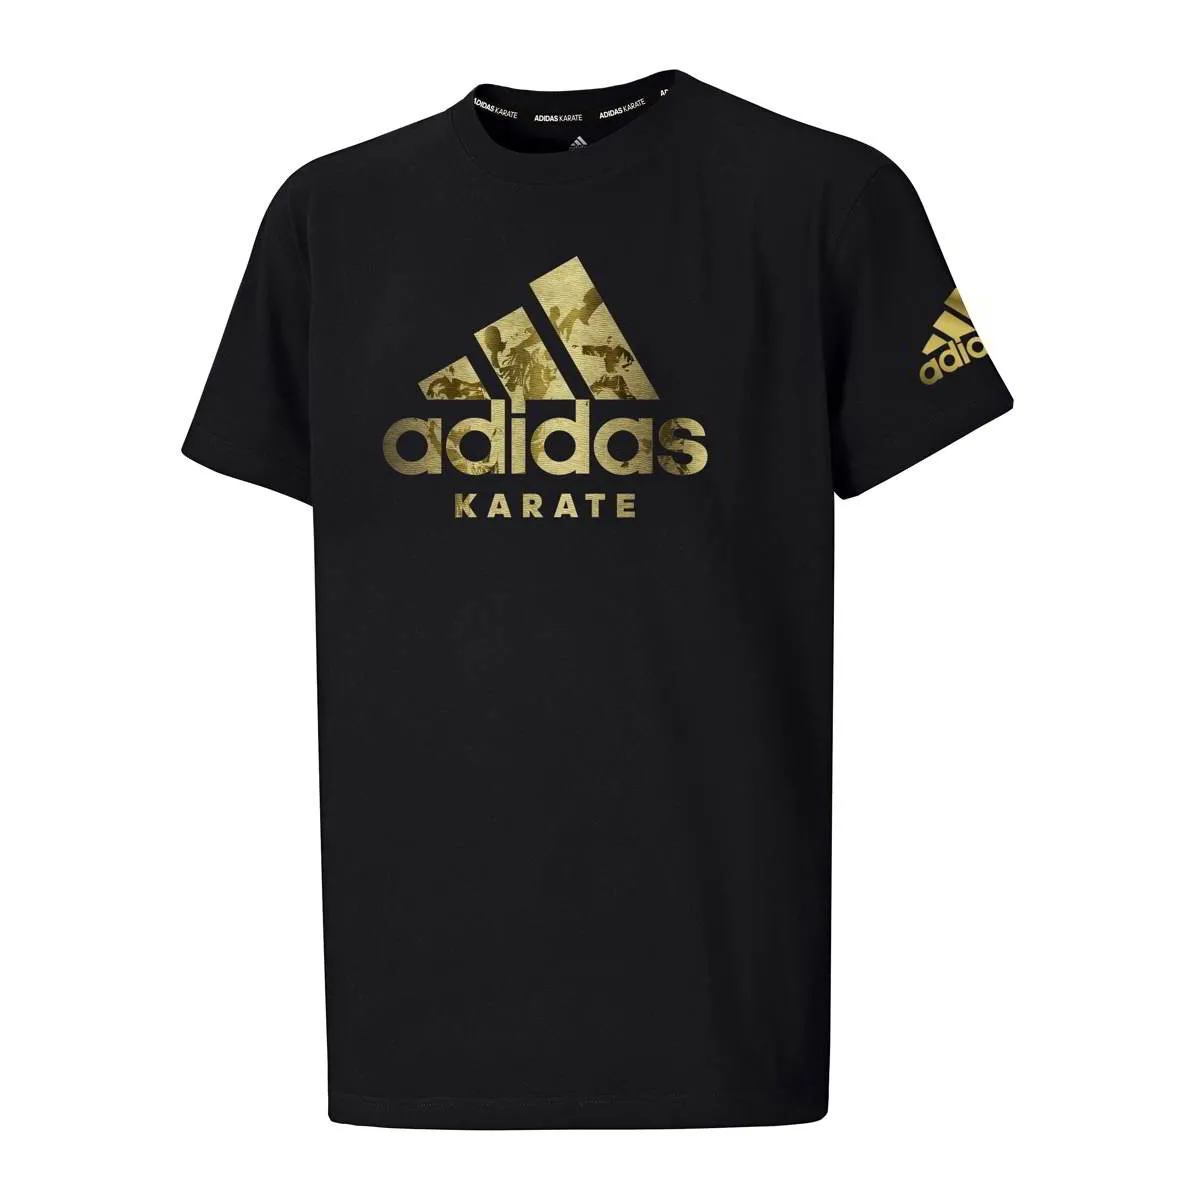 Camiseta adidas Karate negra Insignia del deporte